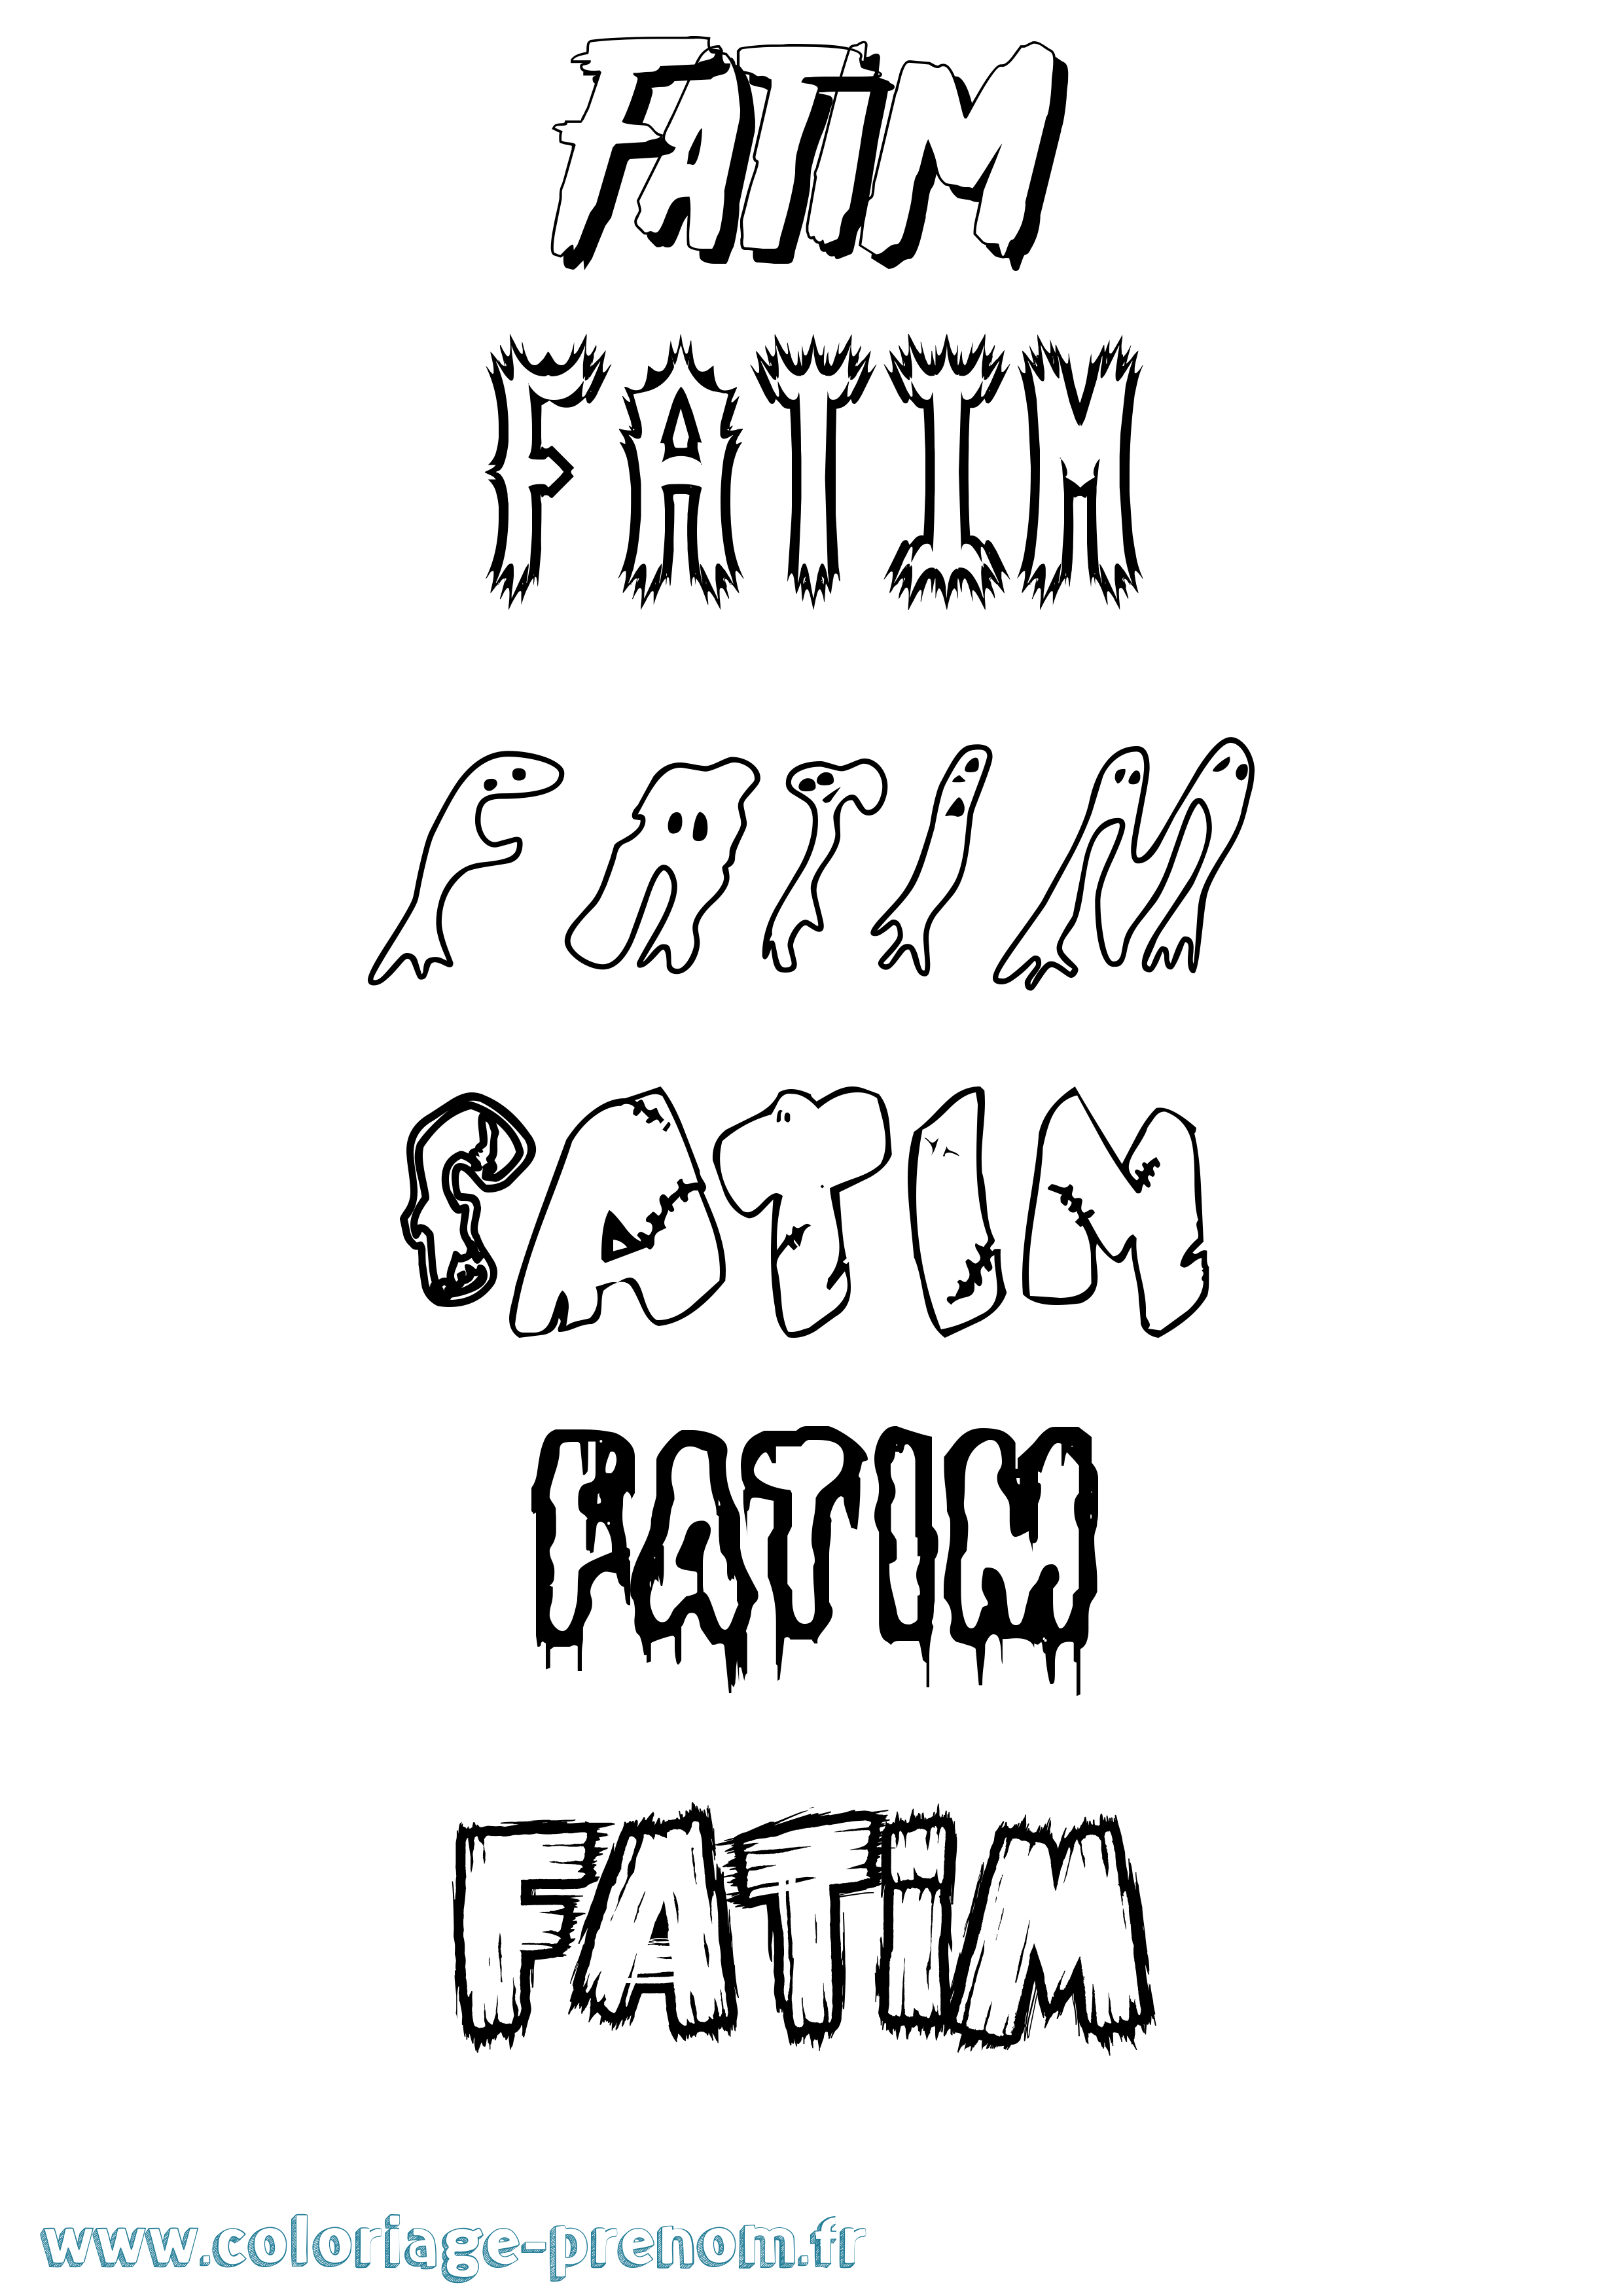 Coloriage prénom Fatim Frisson